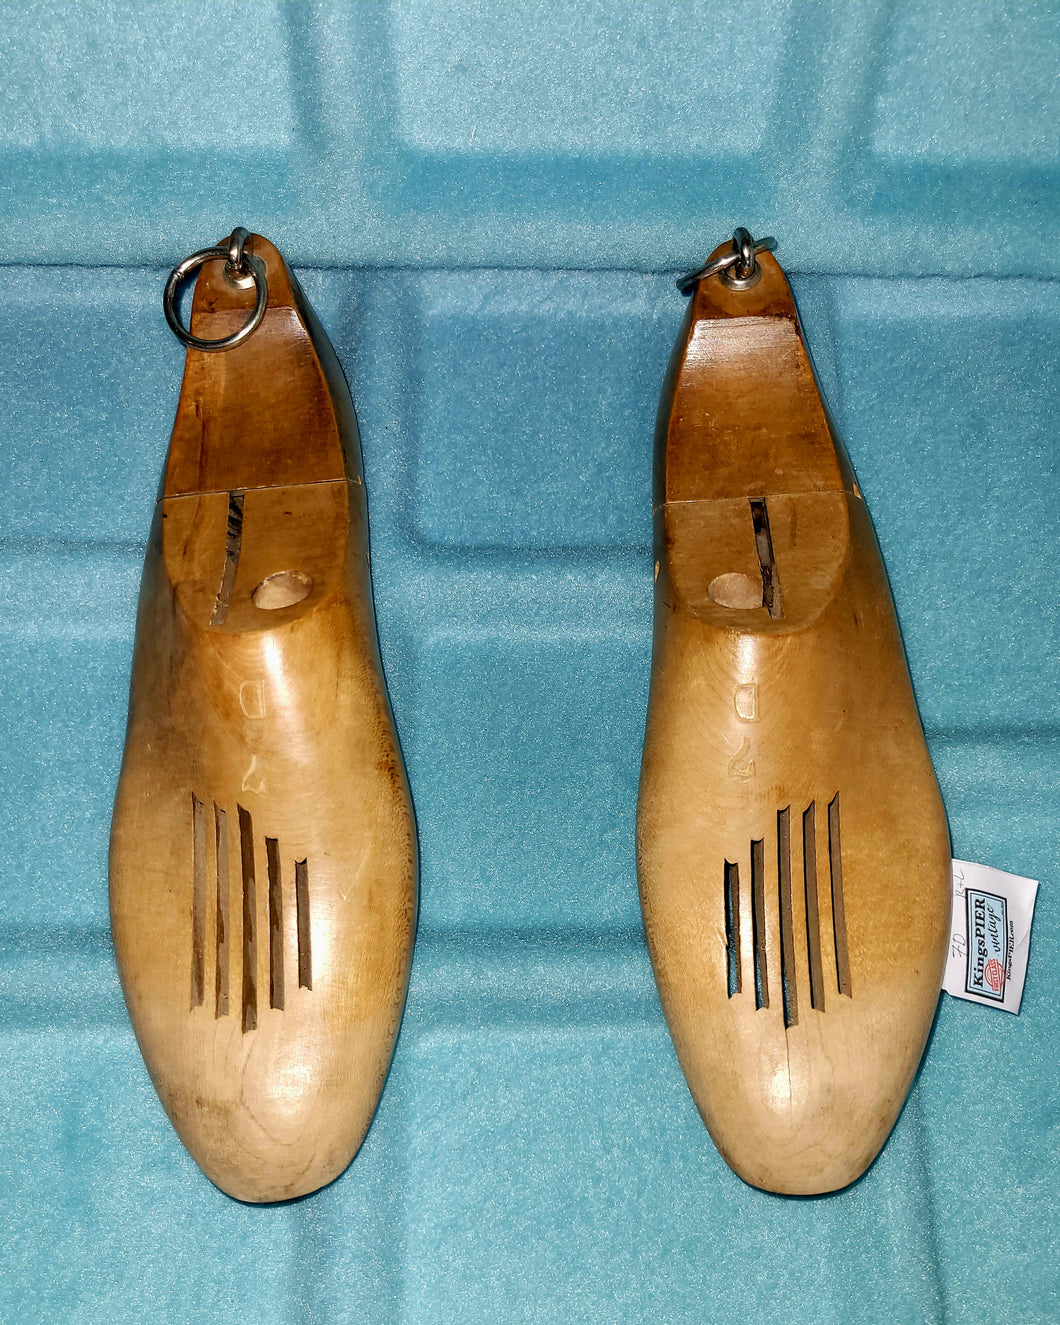 Vintage 1950's Natural Blonde Wood Shoe Tree Stretcher Form size 7D